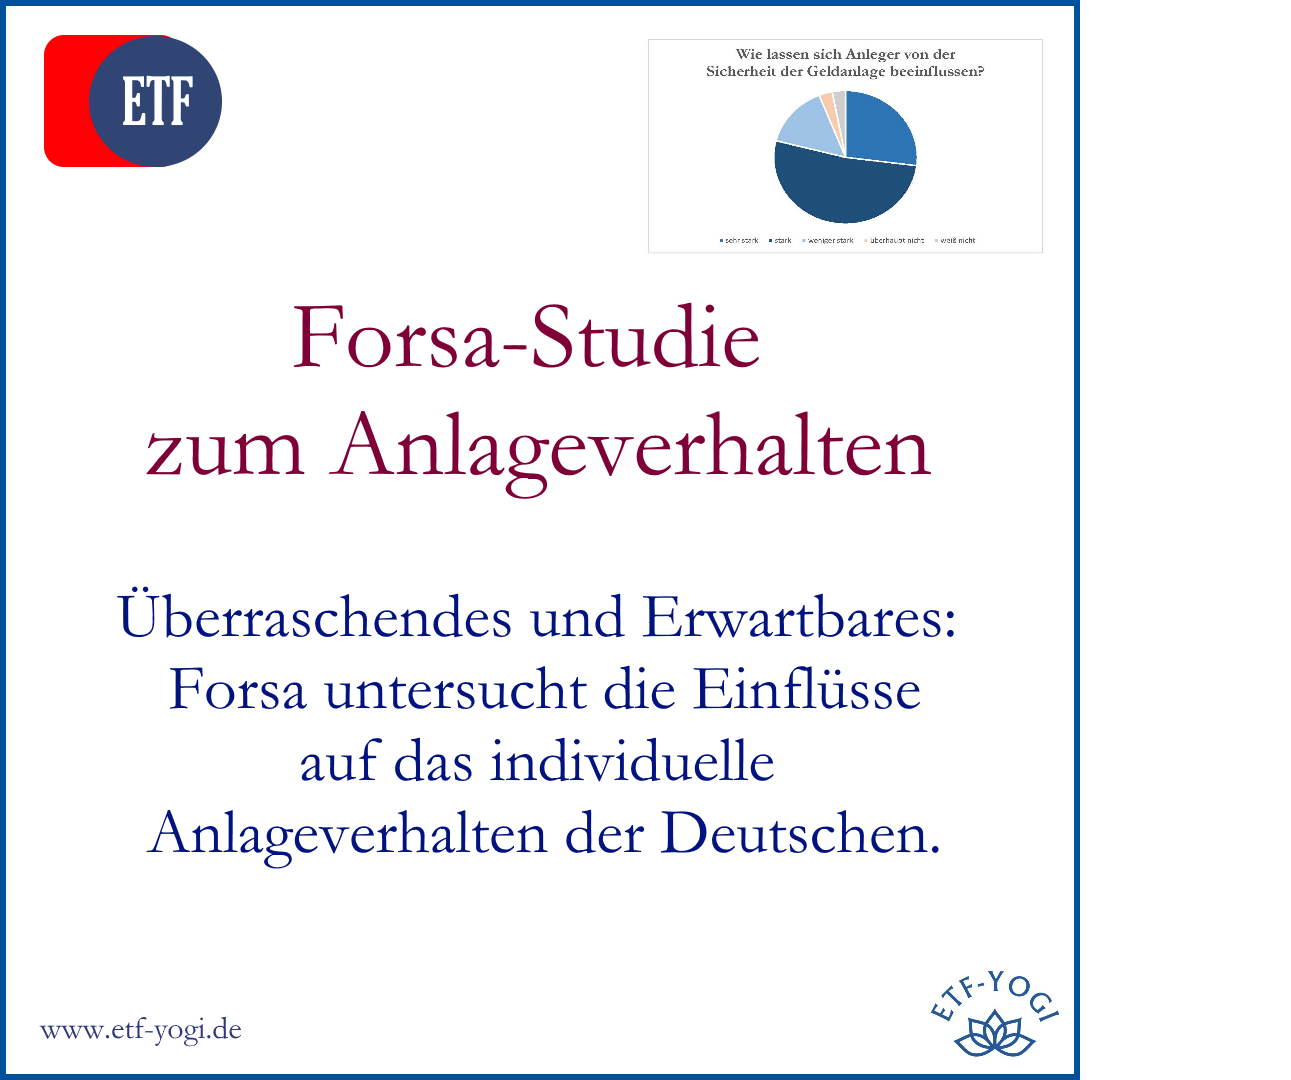 Forsa-Studie: Einflussfaktoren wie Sicherheit auf das Anlageverhalten der Deutschen